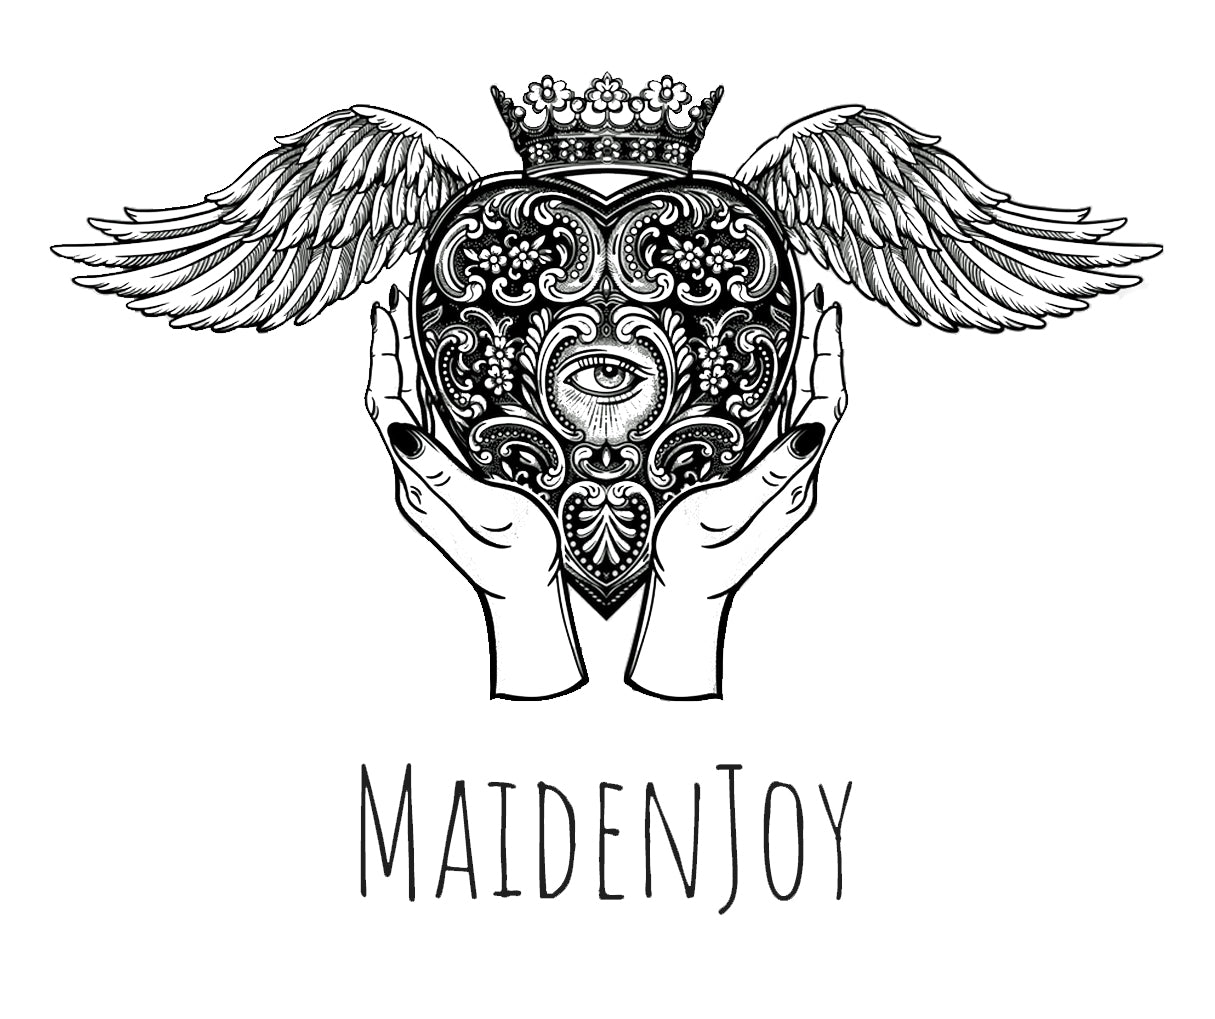 Maiden Joy